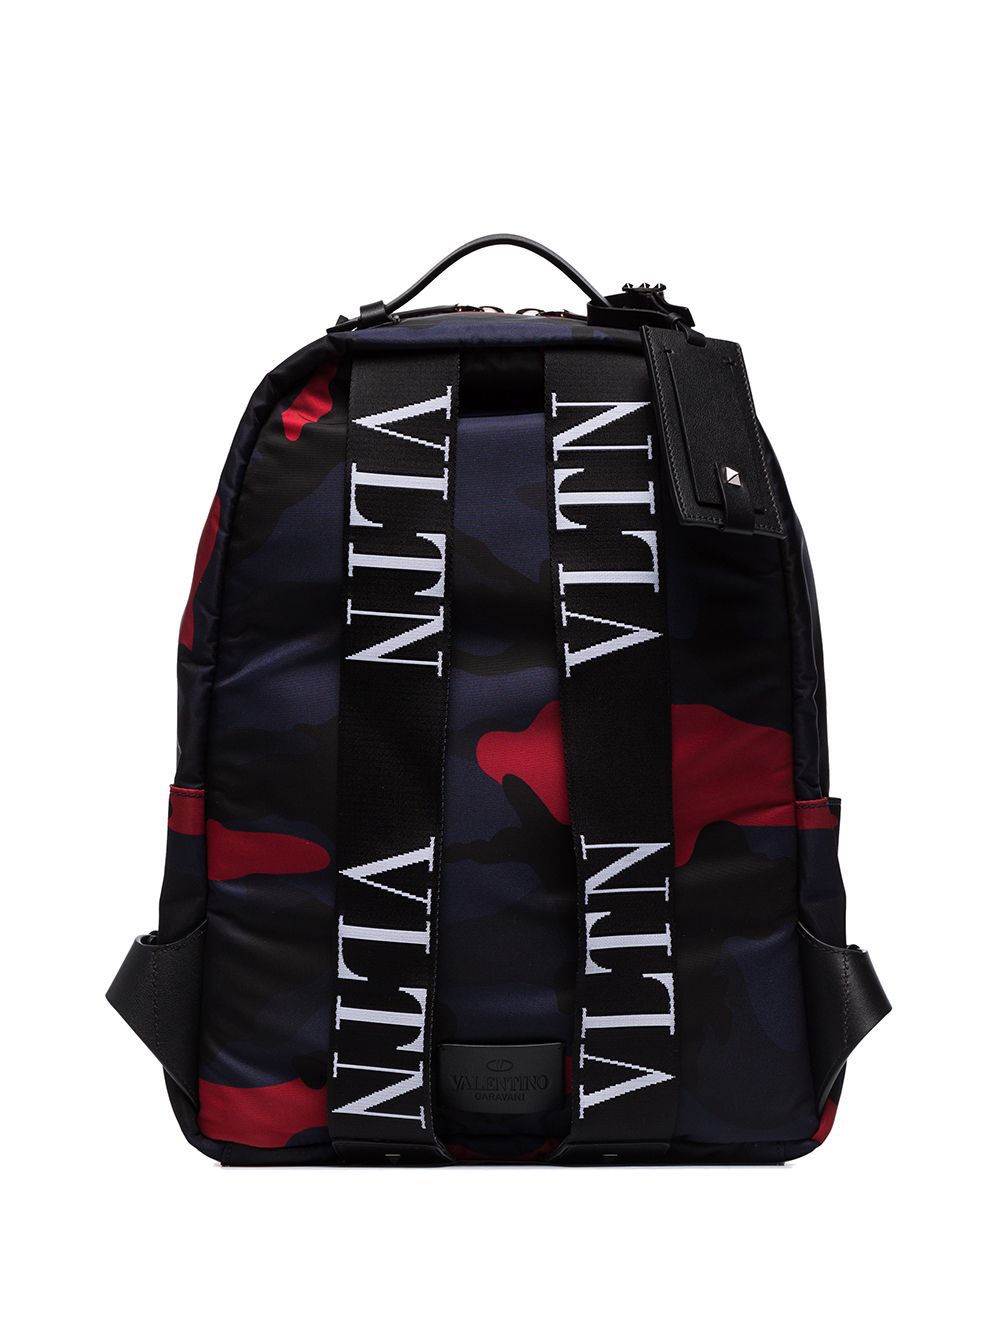 фото Valentino рюкзак valentino garavani с камуфляжным принтом